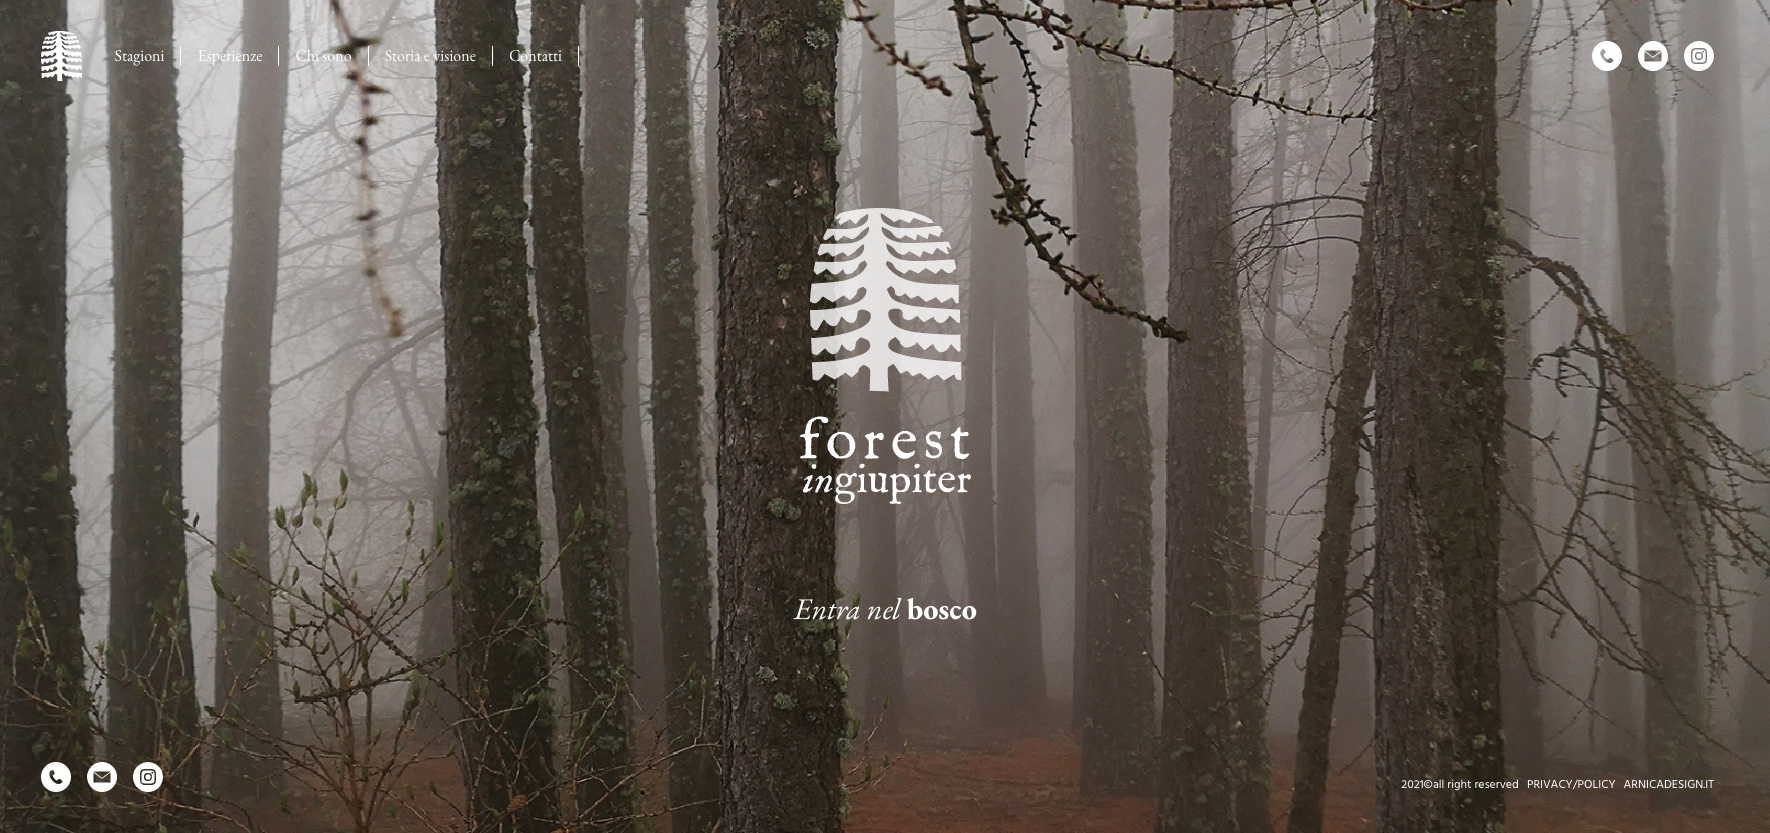 FOREST IN GIUPITER